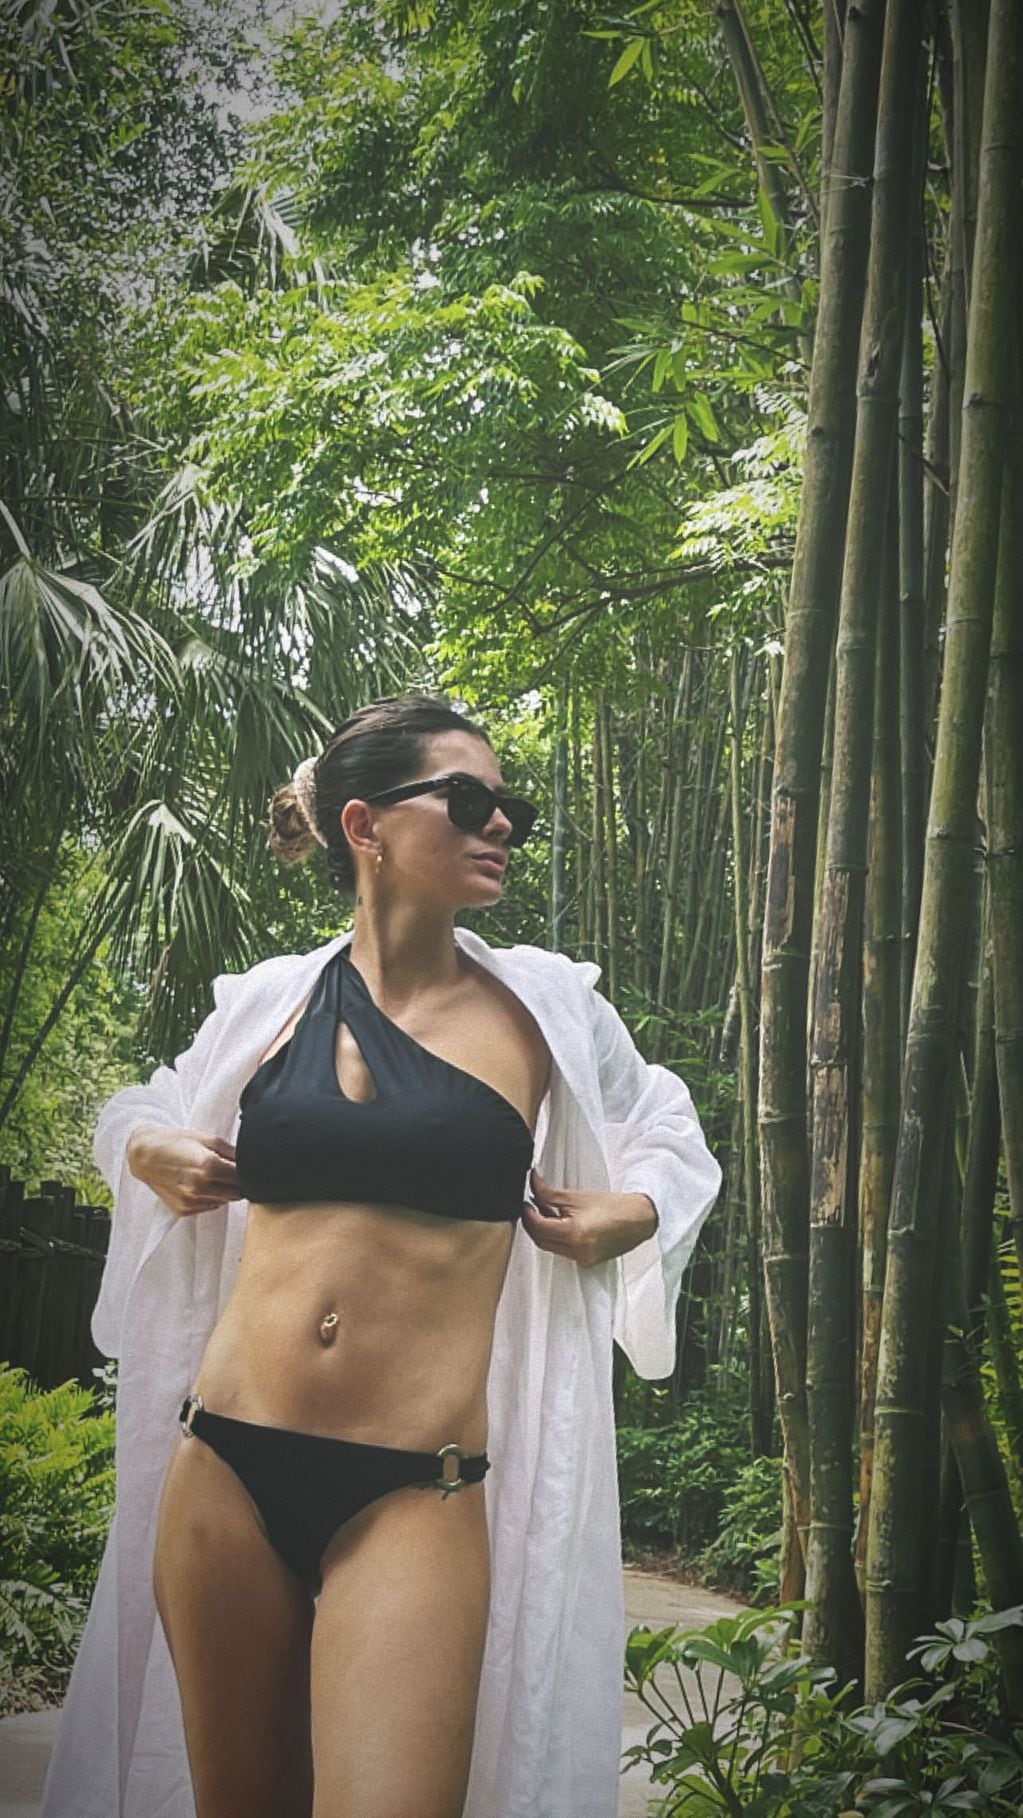 La China Suárez y otra foto en bikini.